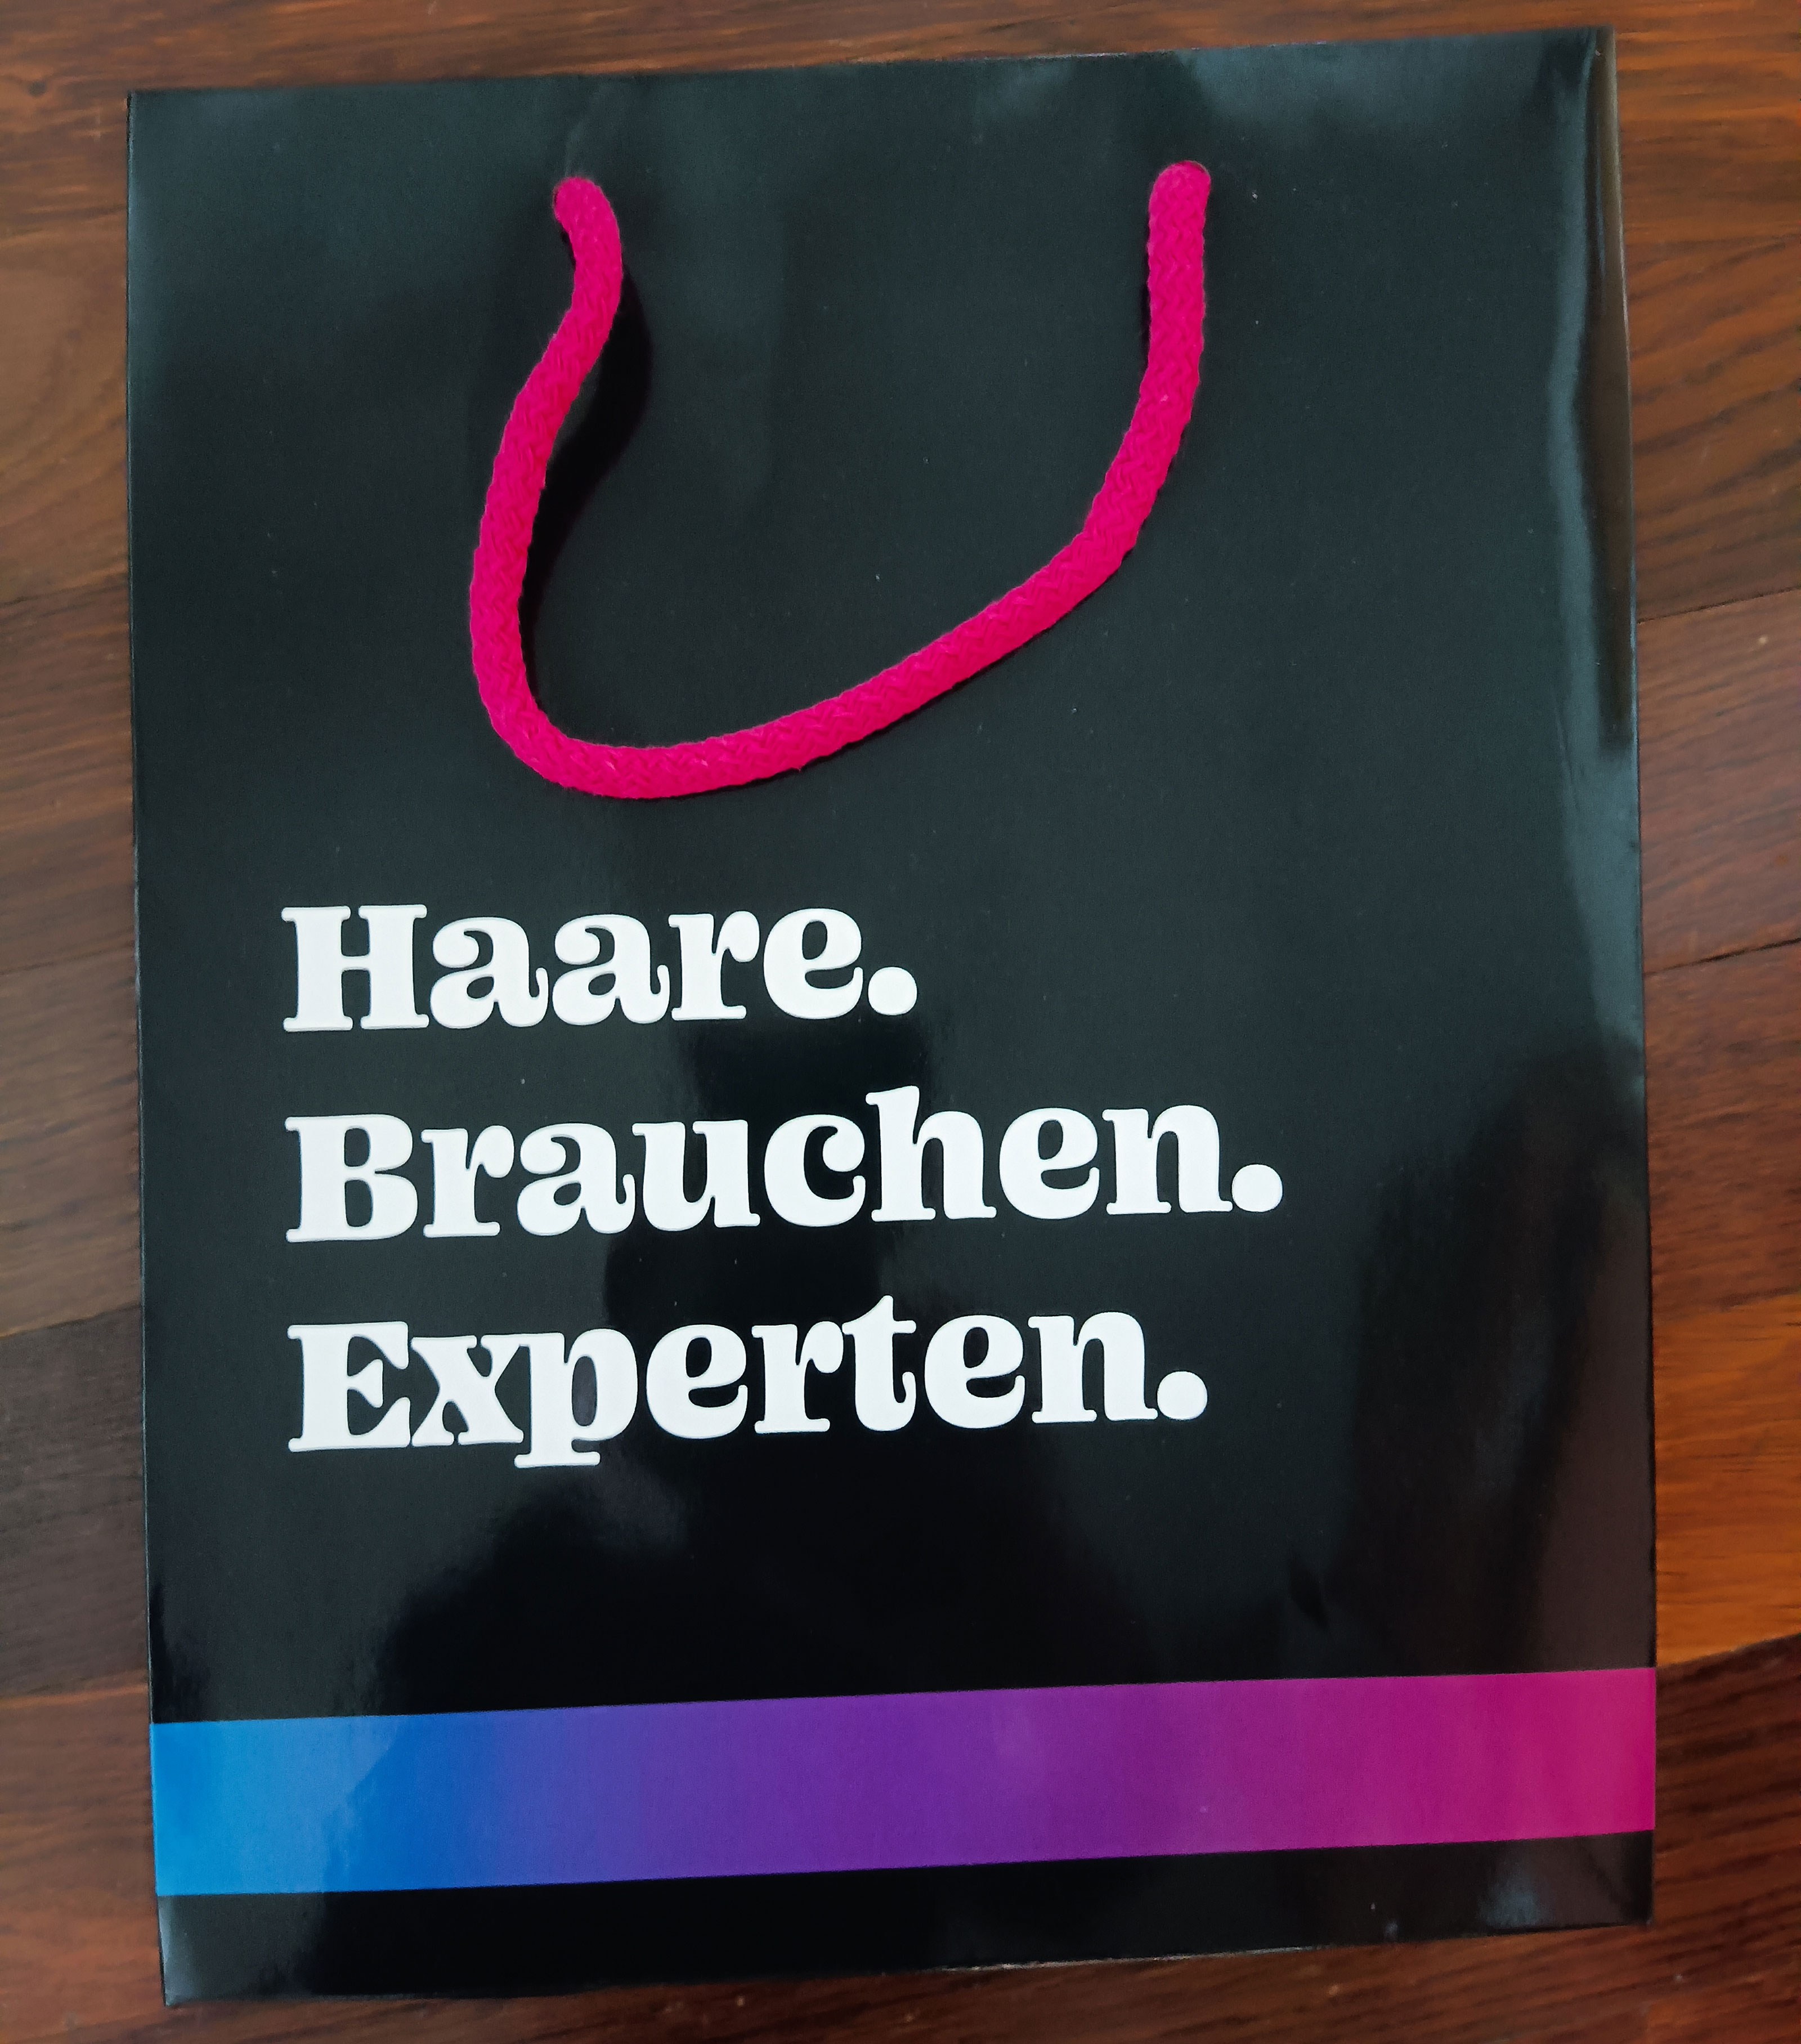 Foto der Papiertragtasche mit Aufschrift "Haare brauchen Experten"